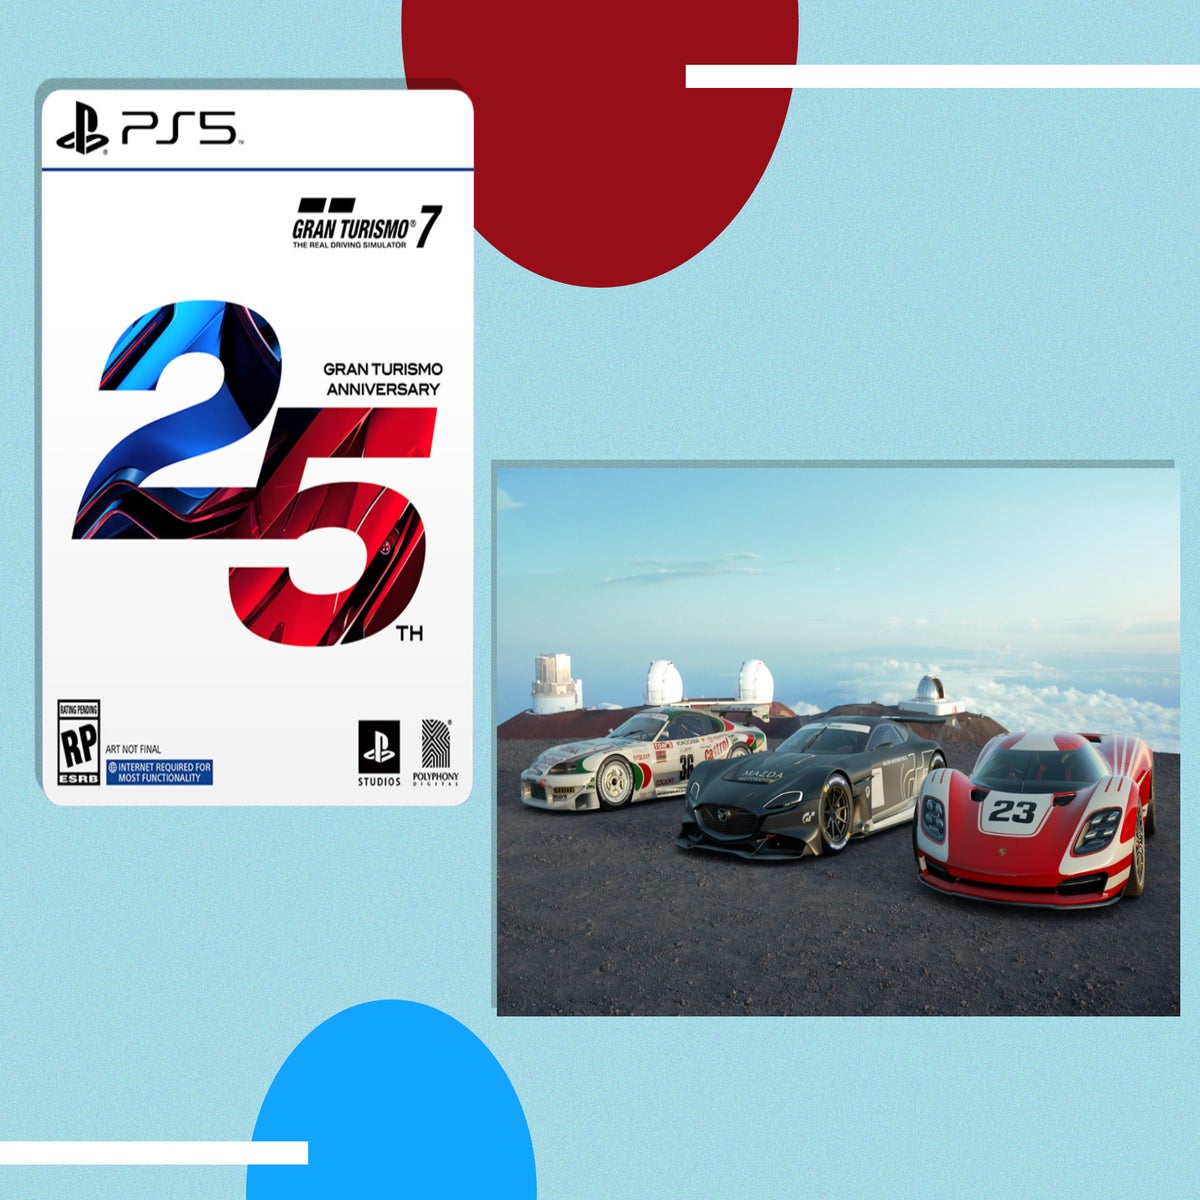 Gran Turismo 7 2022: Pre-order, Bundles, 25th anniversary edition